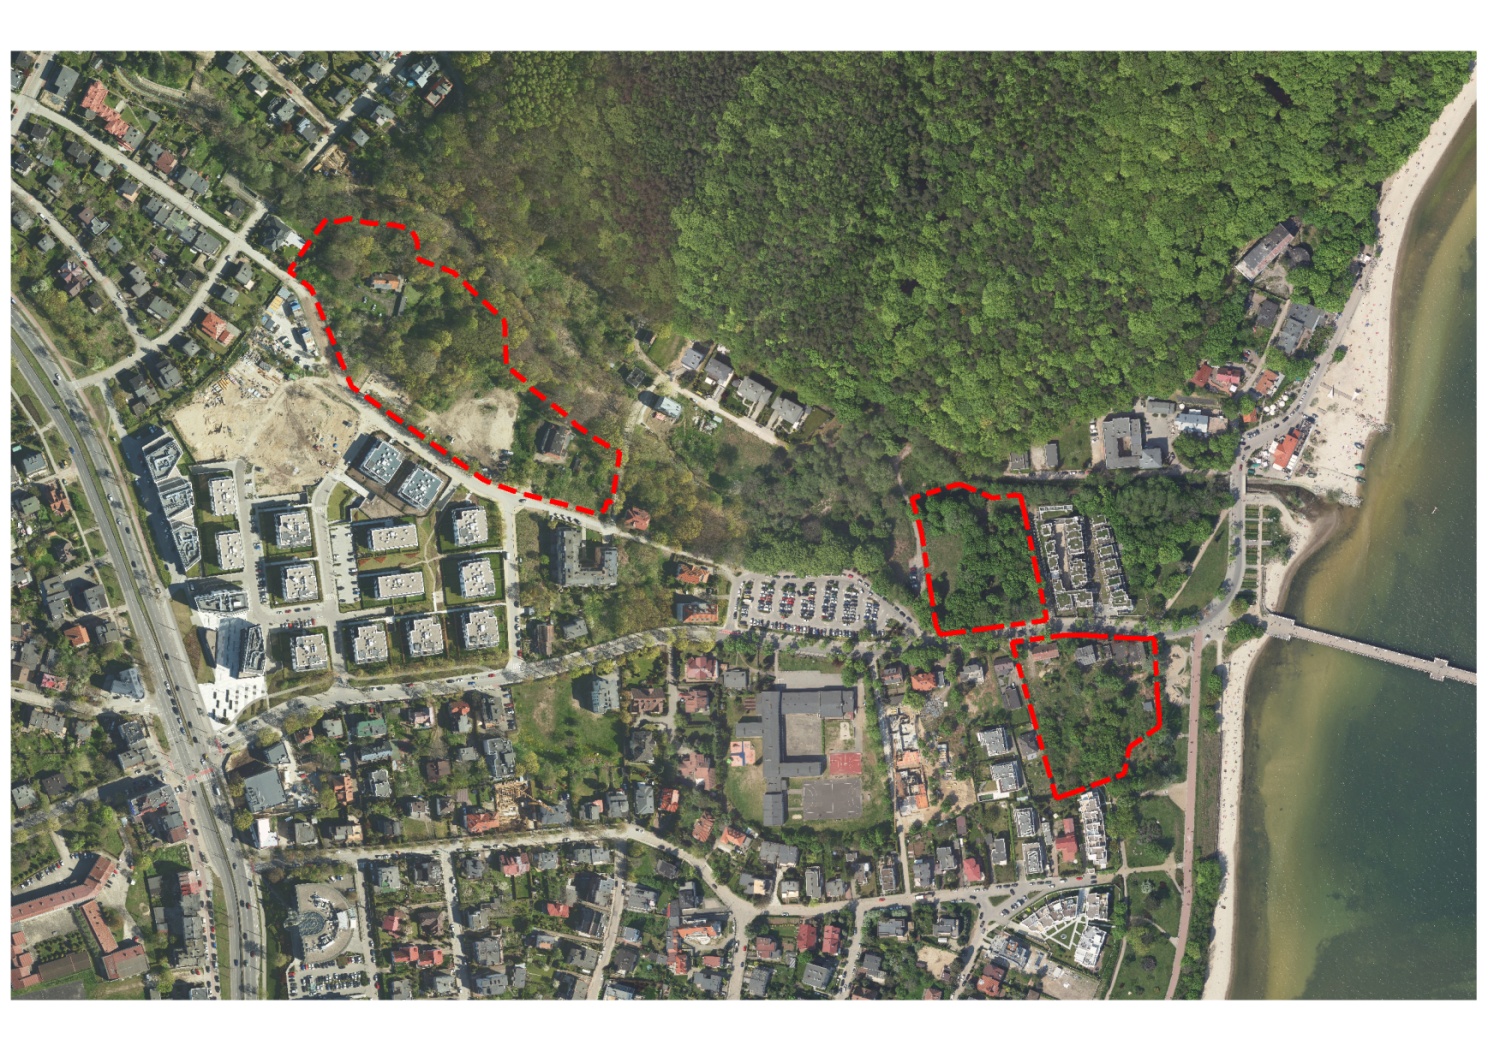 Granica projektu miejscowego planu zagospodarowania przestrzennego części dzielnicy Orłowo w Gdyni, rejon ulic Spacerowej i Orłowskiej